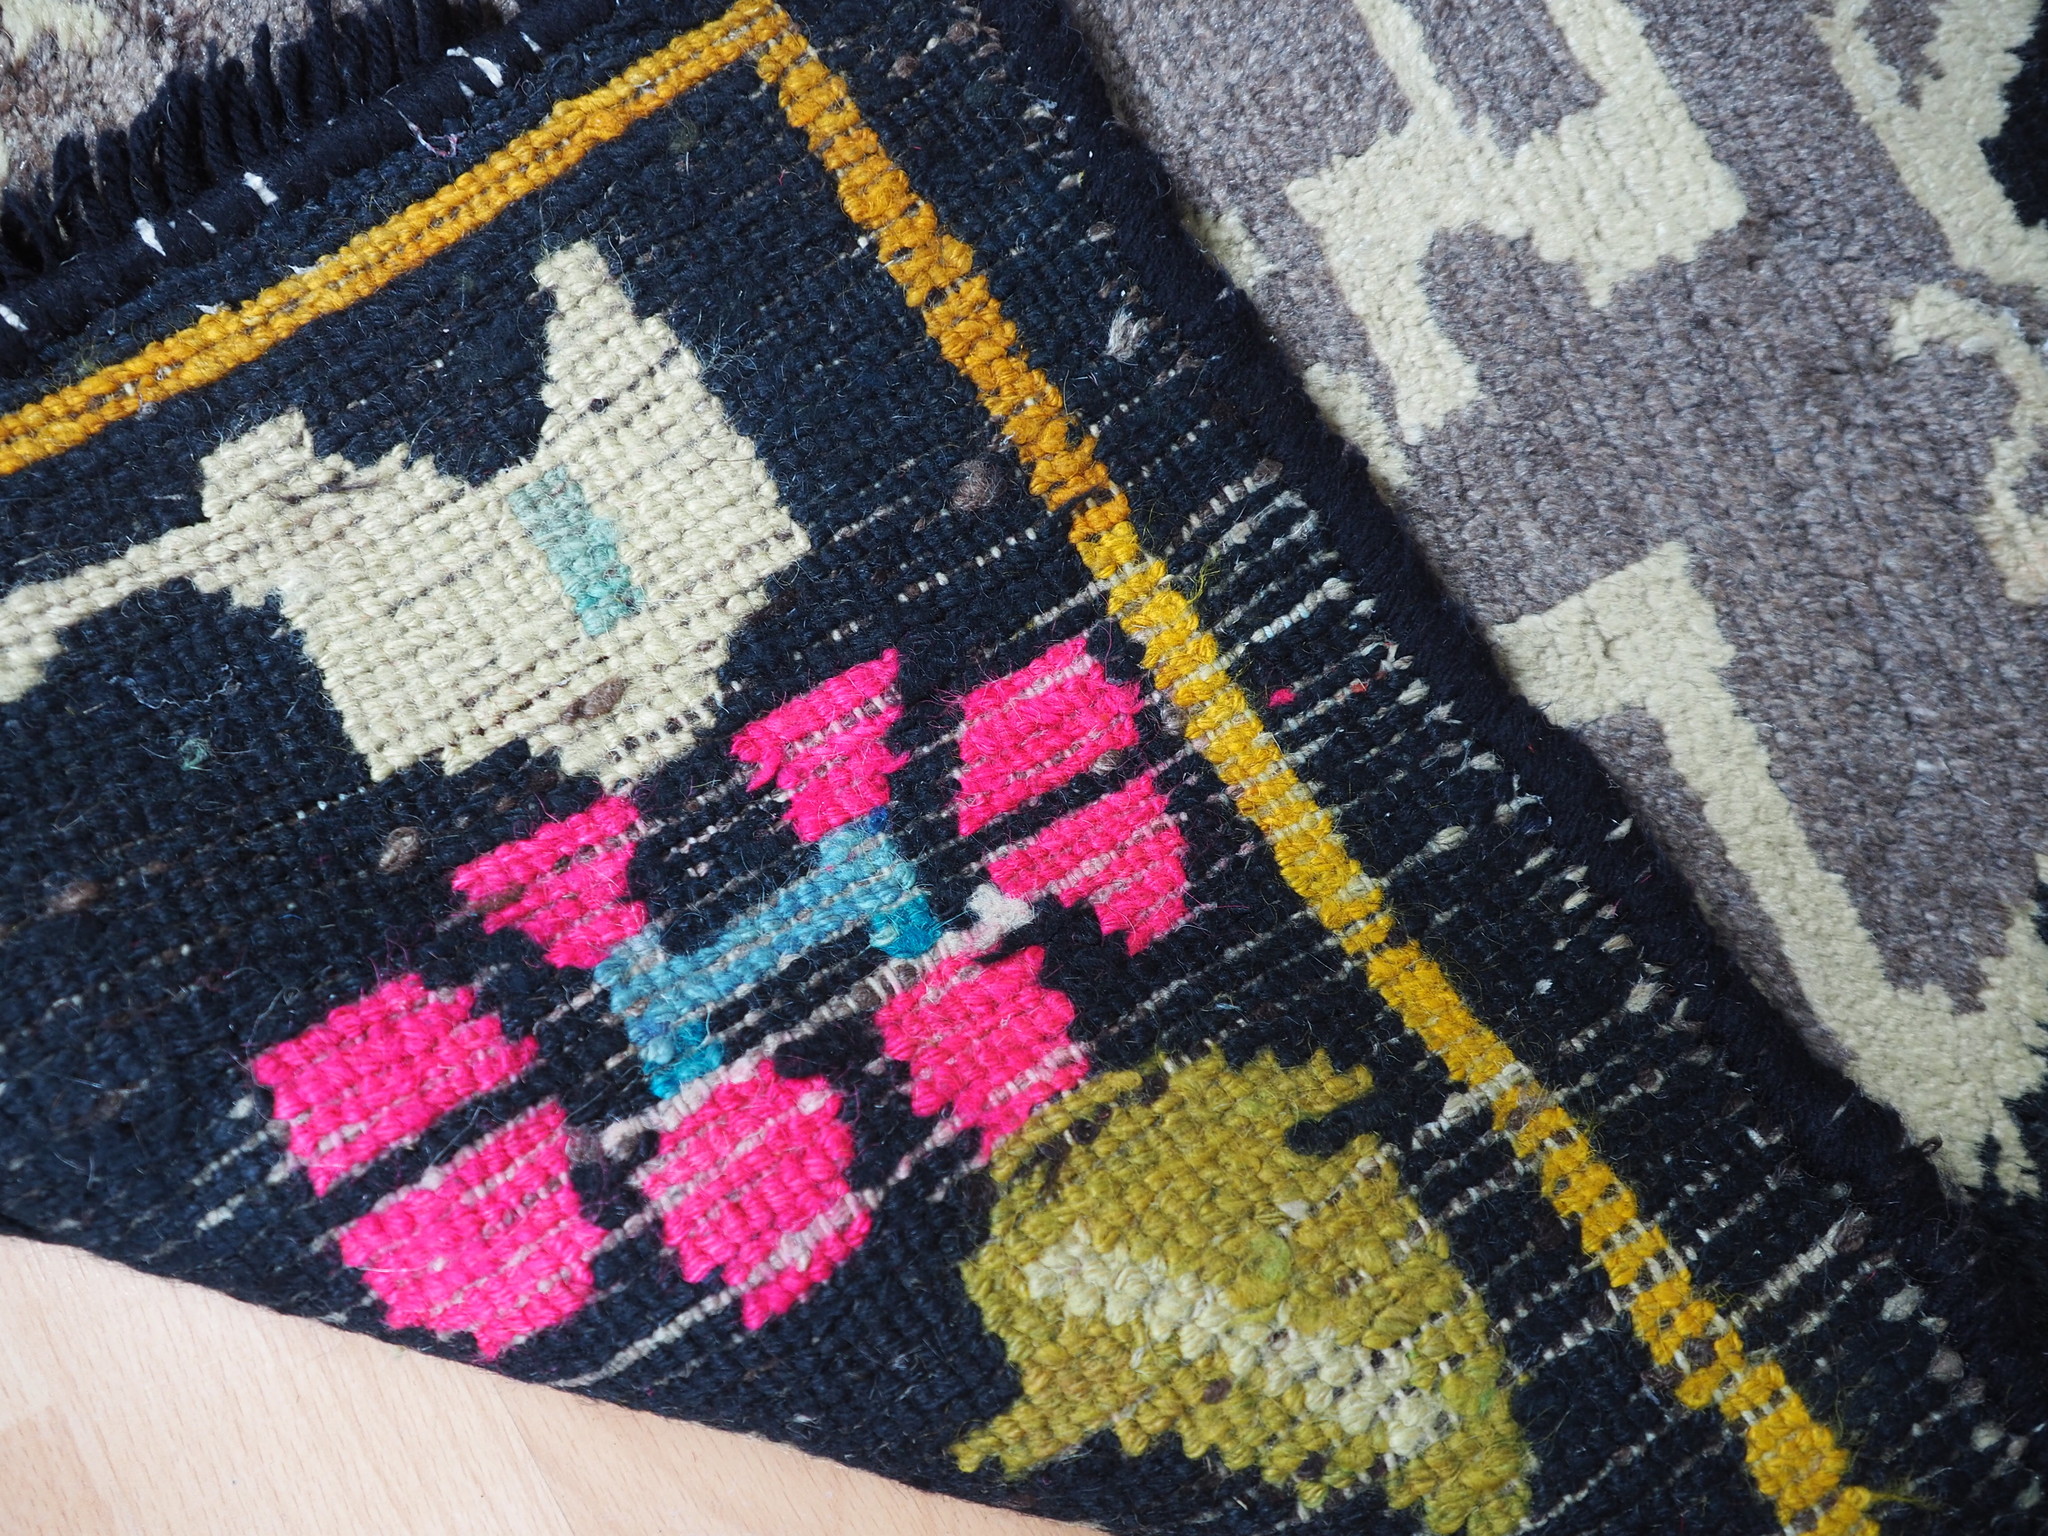 165x82  cm Rare antique oriental hand Knotted Tibetan Khaden sleeping Carpet No:7